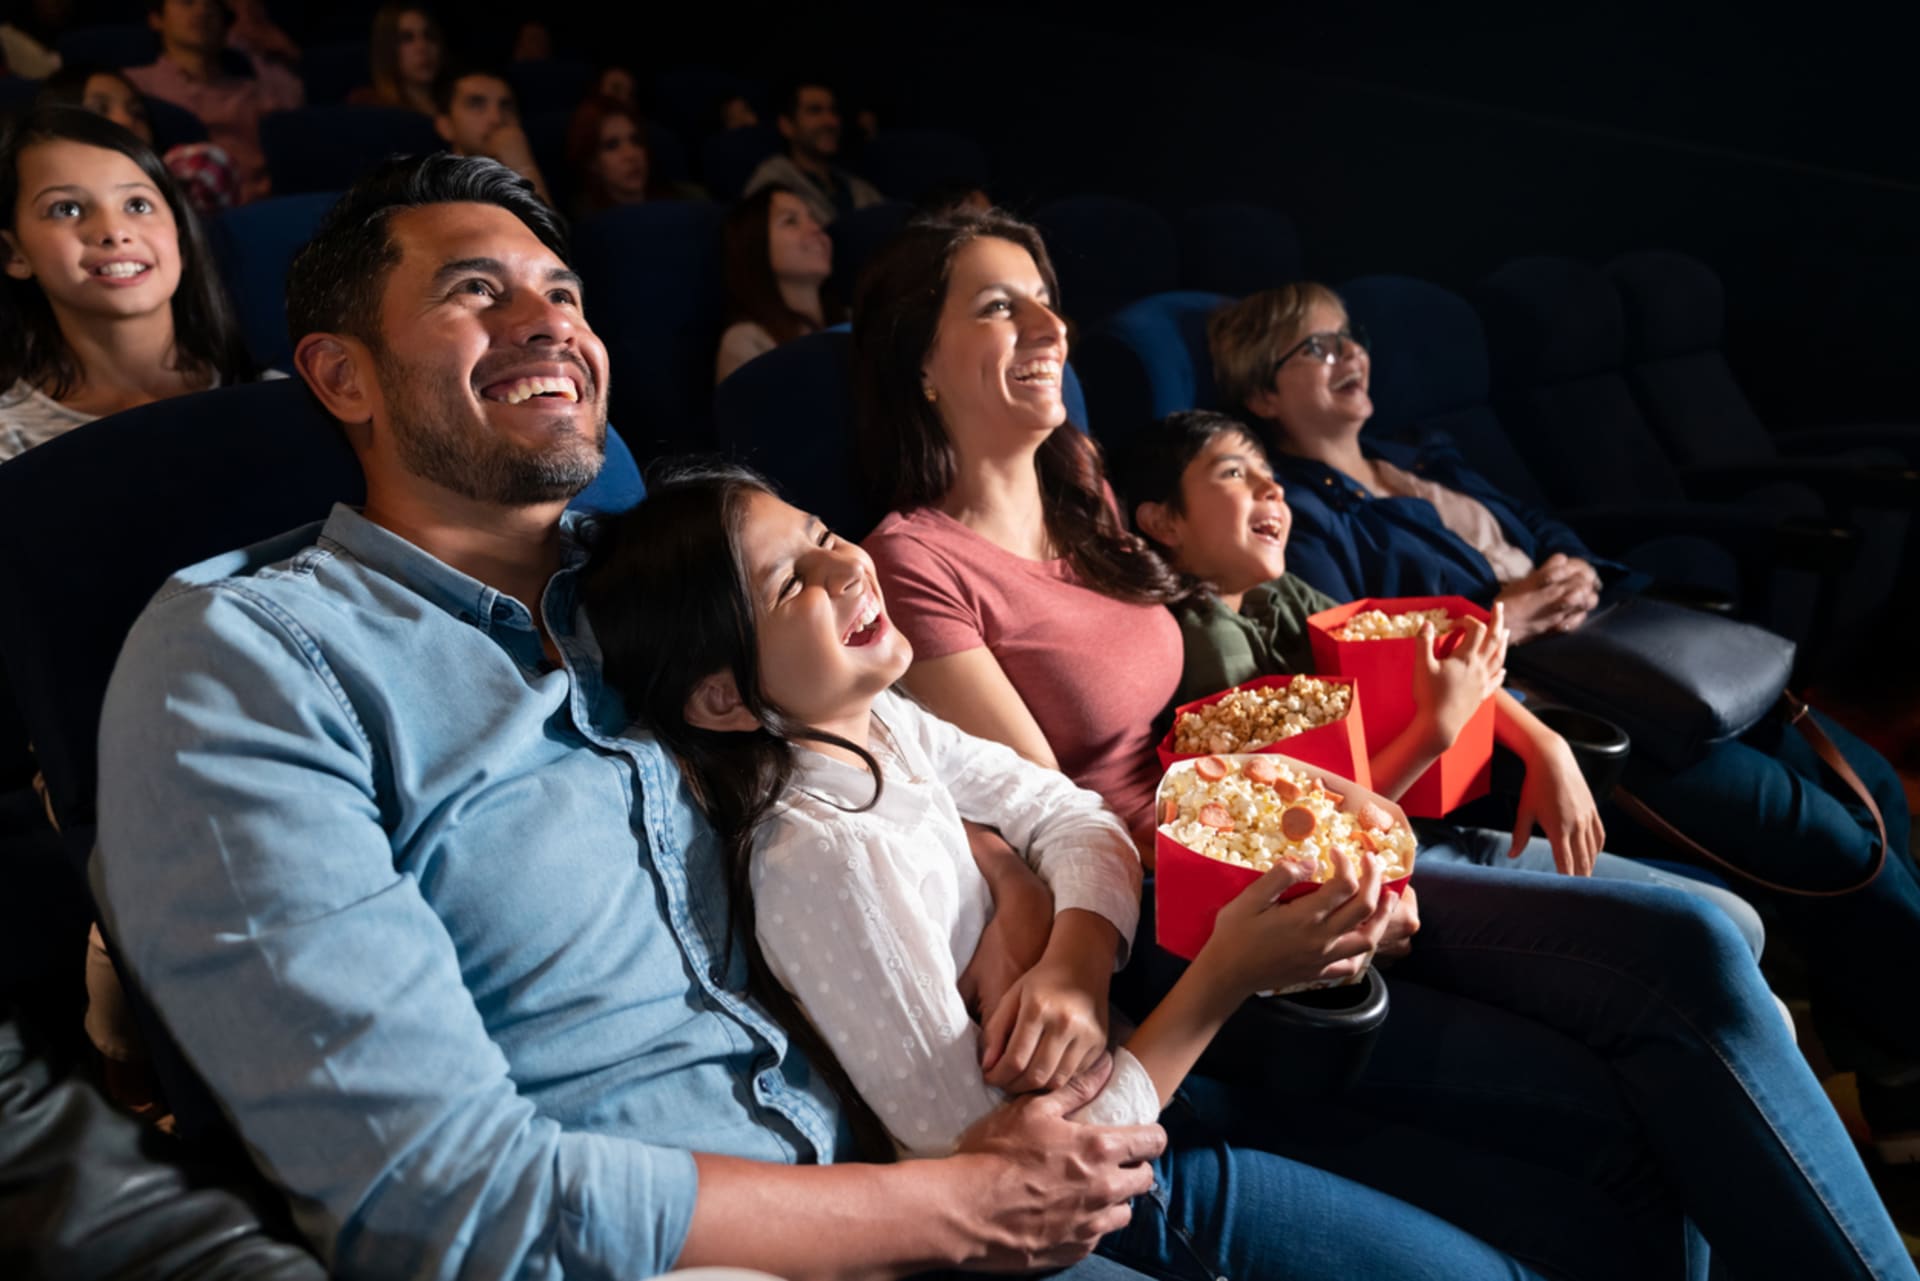 Popcorn v kině také někdo nedokáže oželit. Zvolte aspoň menší porci. Rozdíly v cenách jednotlivých velikostí jsou bohužel nastavené tak, aby na nás měly psychologický vliv.